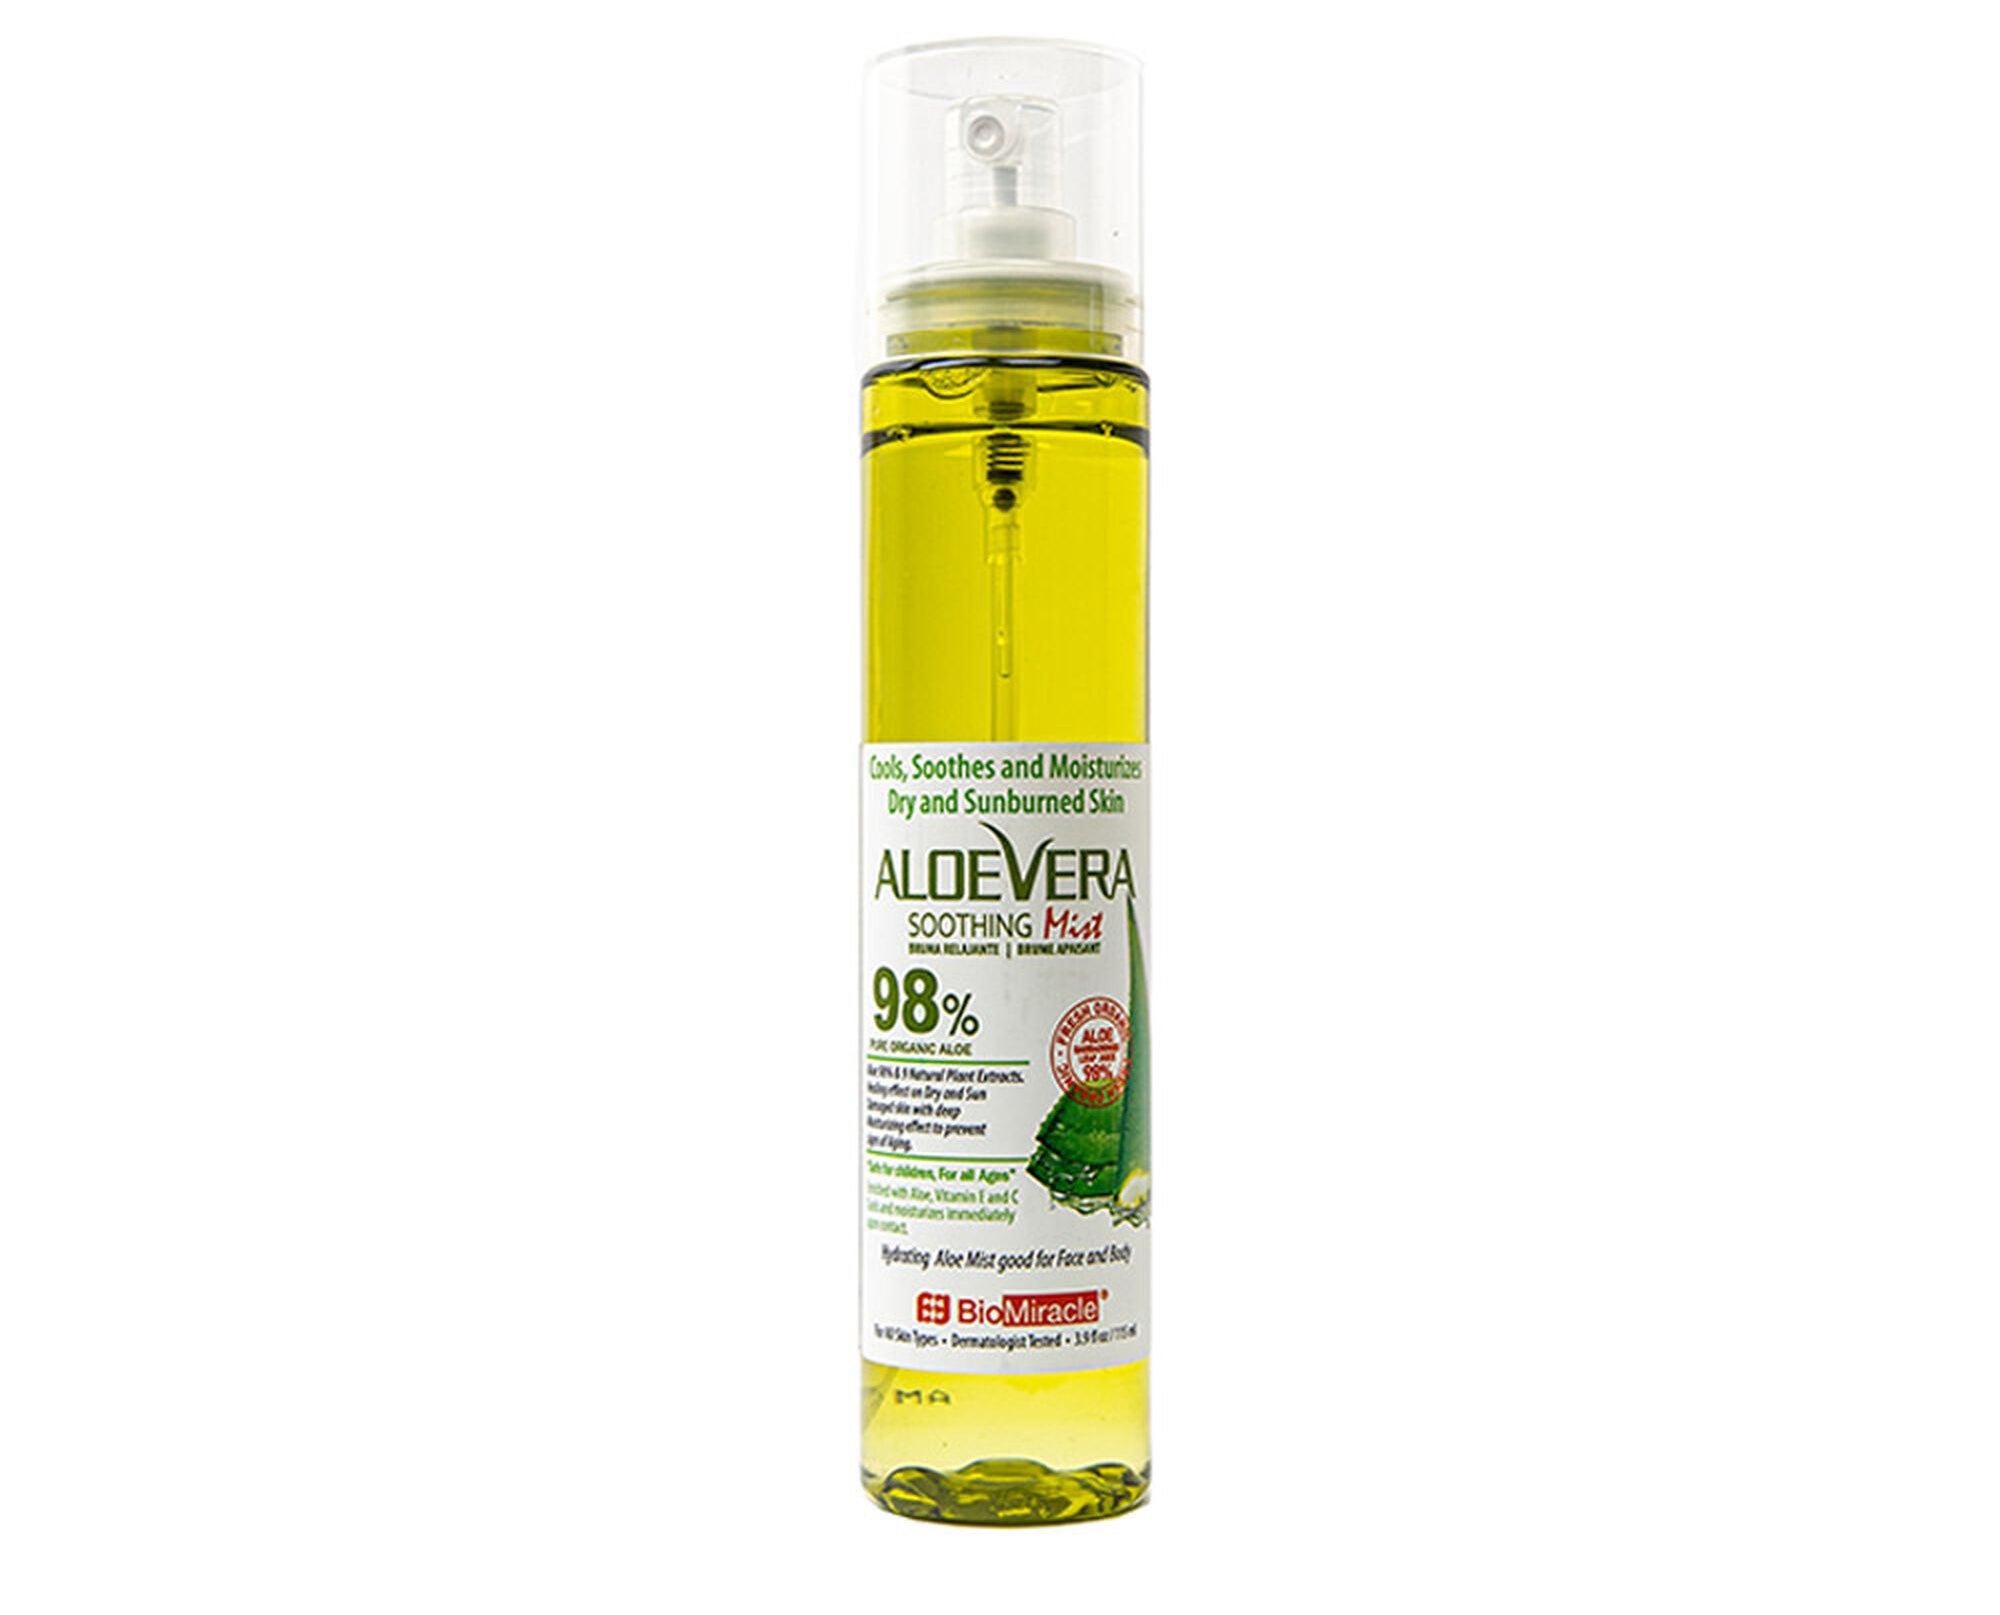 The aloe vera spray